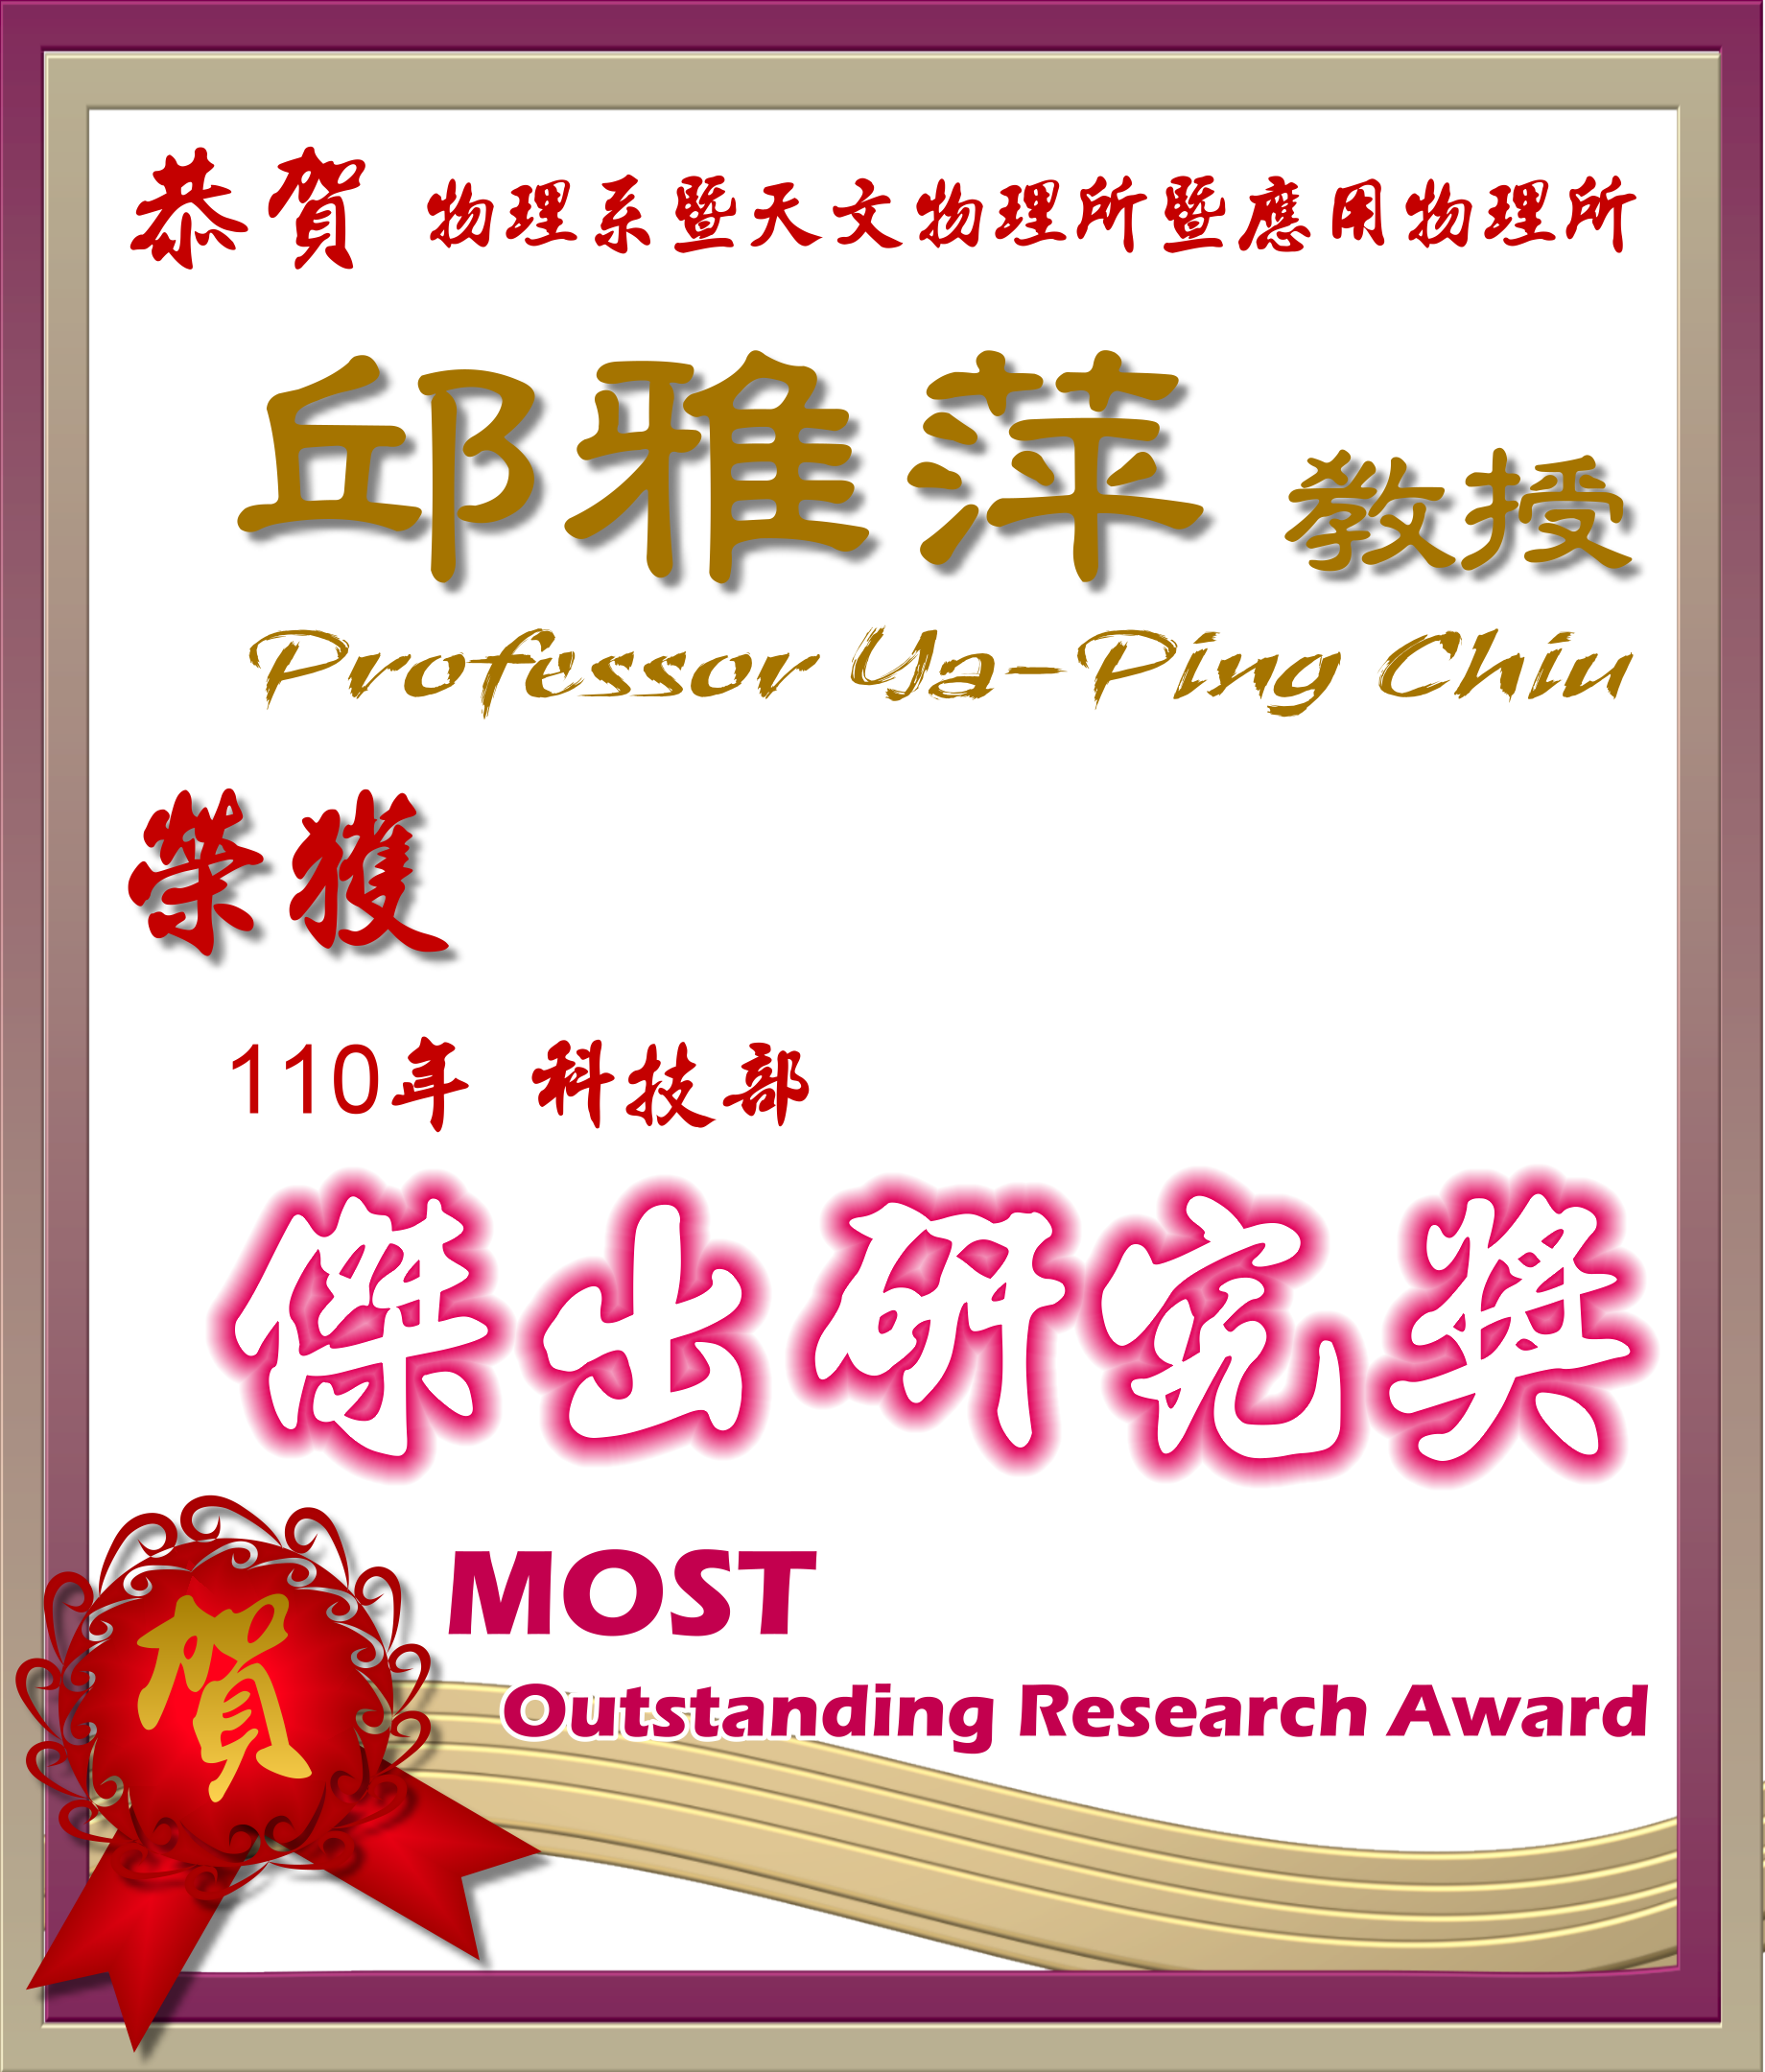 《賀》本系 邱雅萍 教授 Prof. Ya-Ping Chiu 榮獲 110 年度《科技部 傑出研究獎》 (MOST Outstanding Research Award)